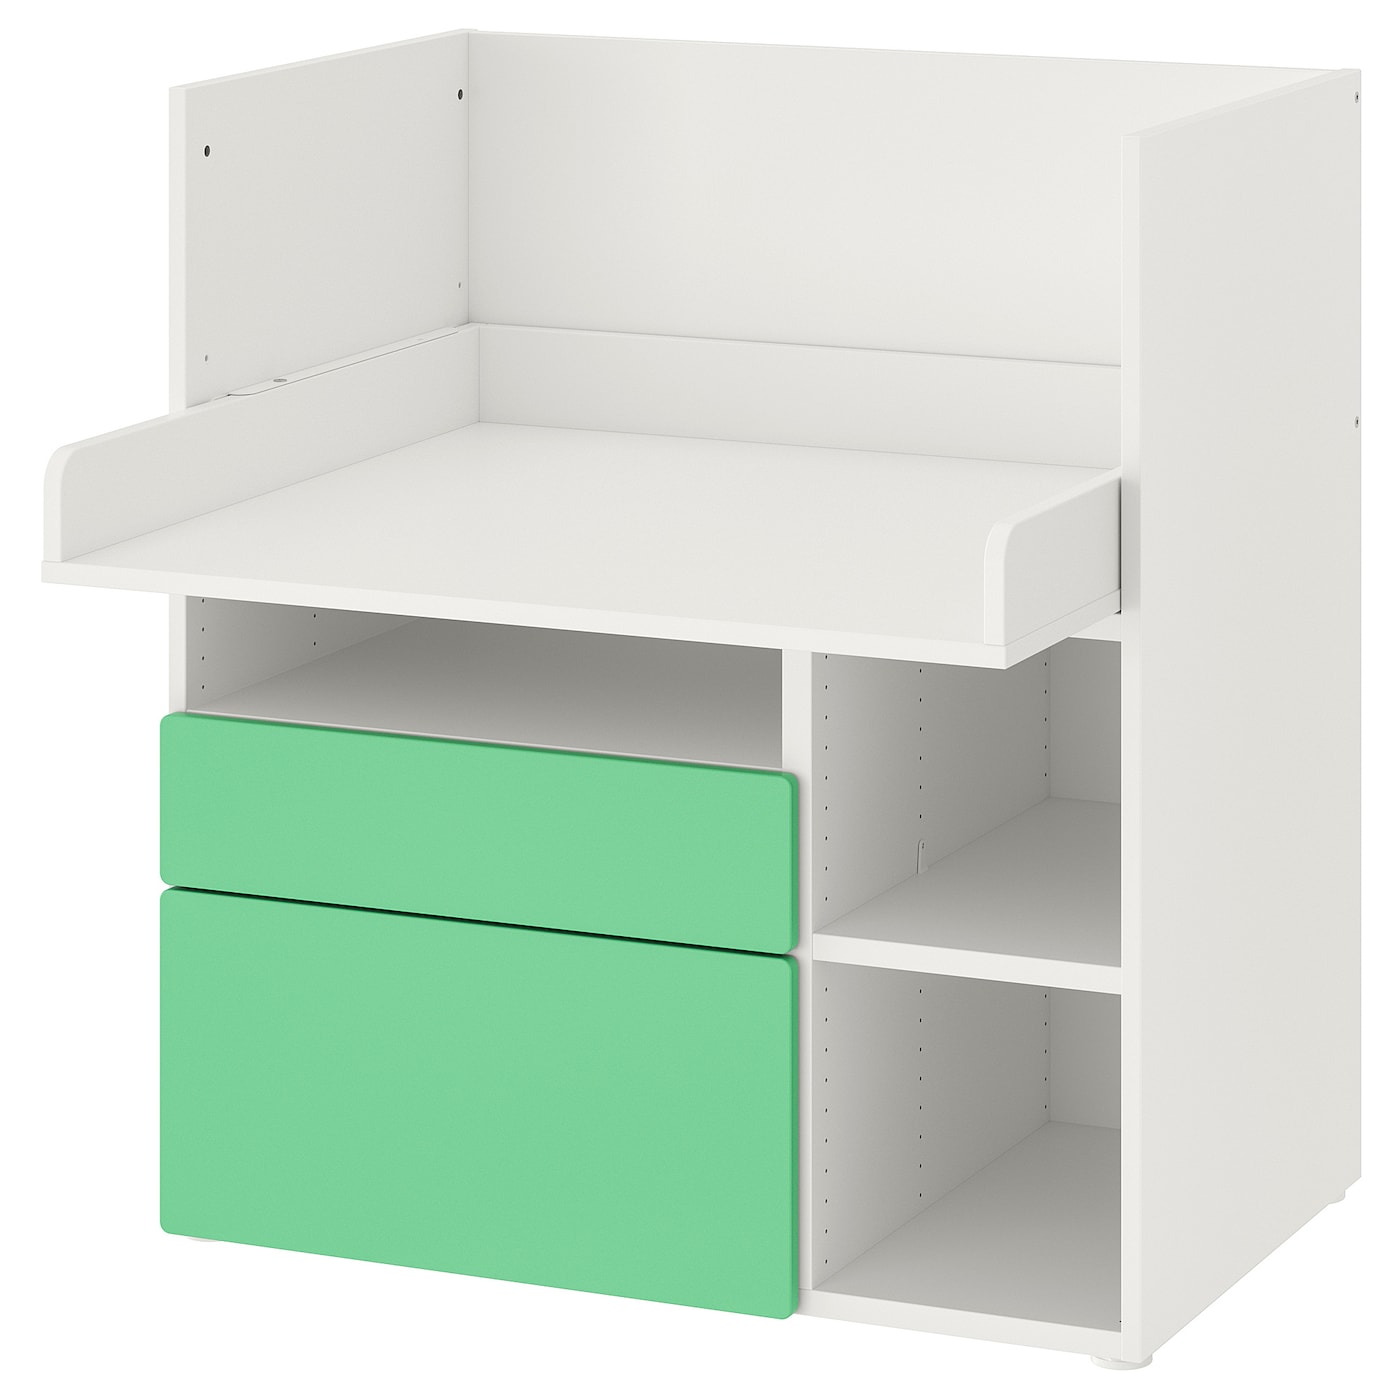 SMÅSTAD Schreibtisch  -  - Möbel Ideen für dein Zuhause von Home Trends. Möbel Trends von Social Media Influencer für dein Skandi Zuhause.